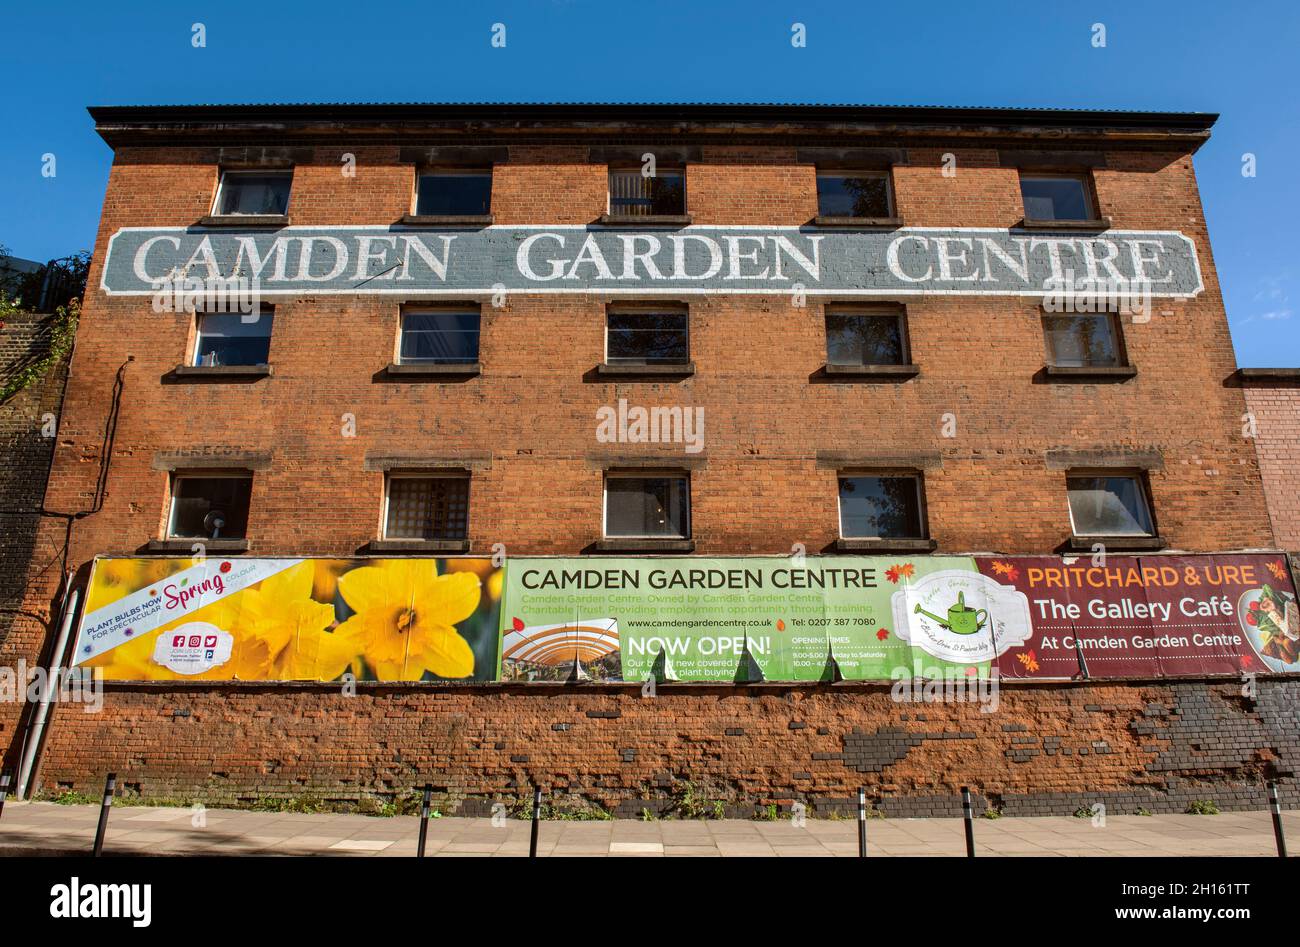 El letrero del Camden Garden Center está pintado en el antiguo edificio de ladrillo del barrio londinense de Camden, Inglaterra, Reino Unido Foto de stock